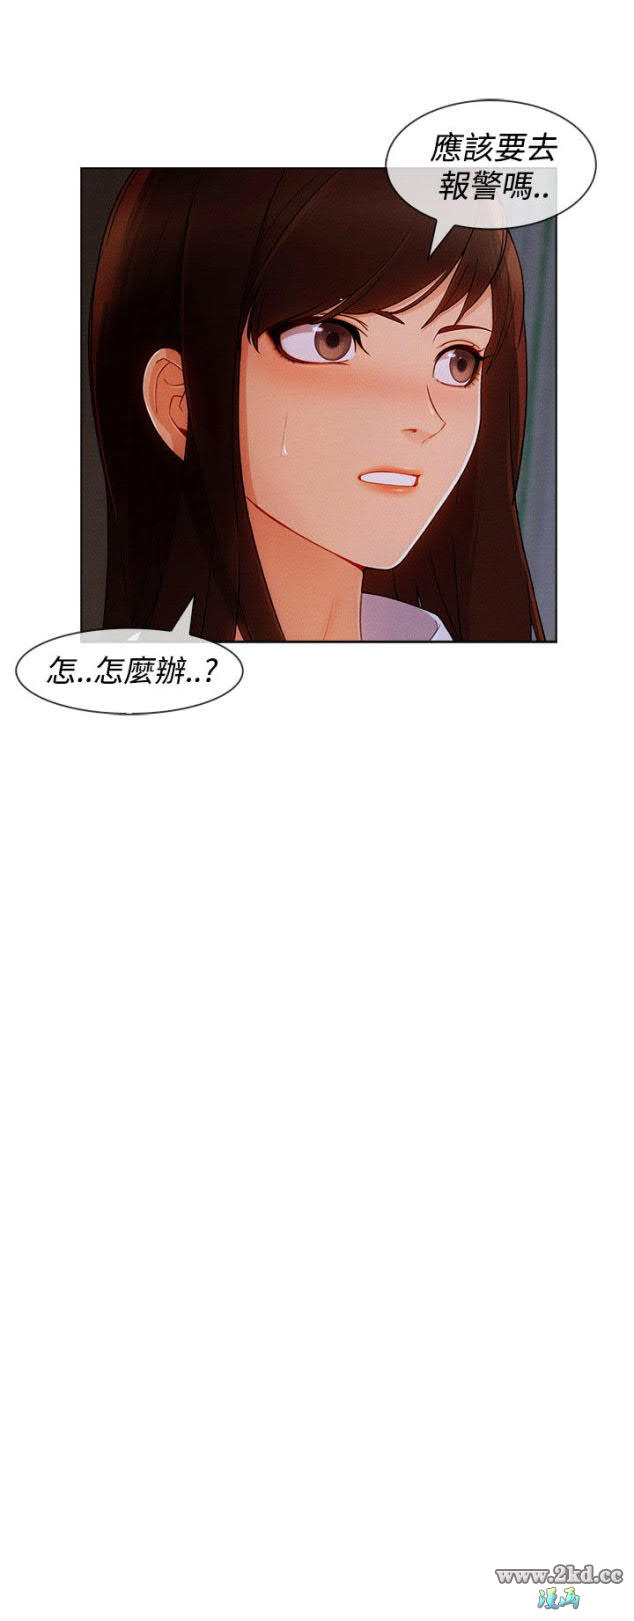 《淑女花苑》漫画 第3季 第12话